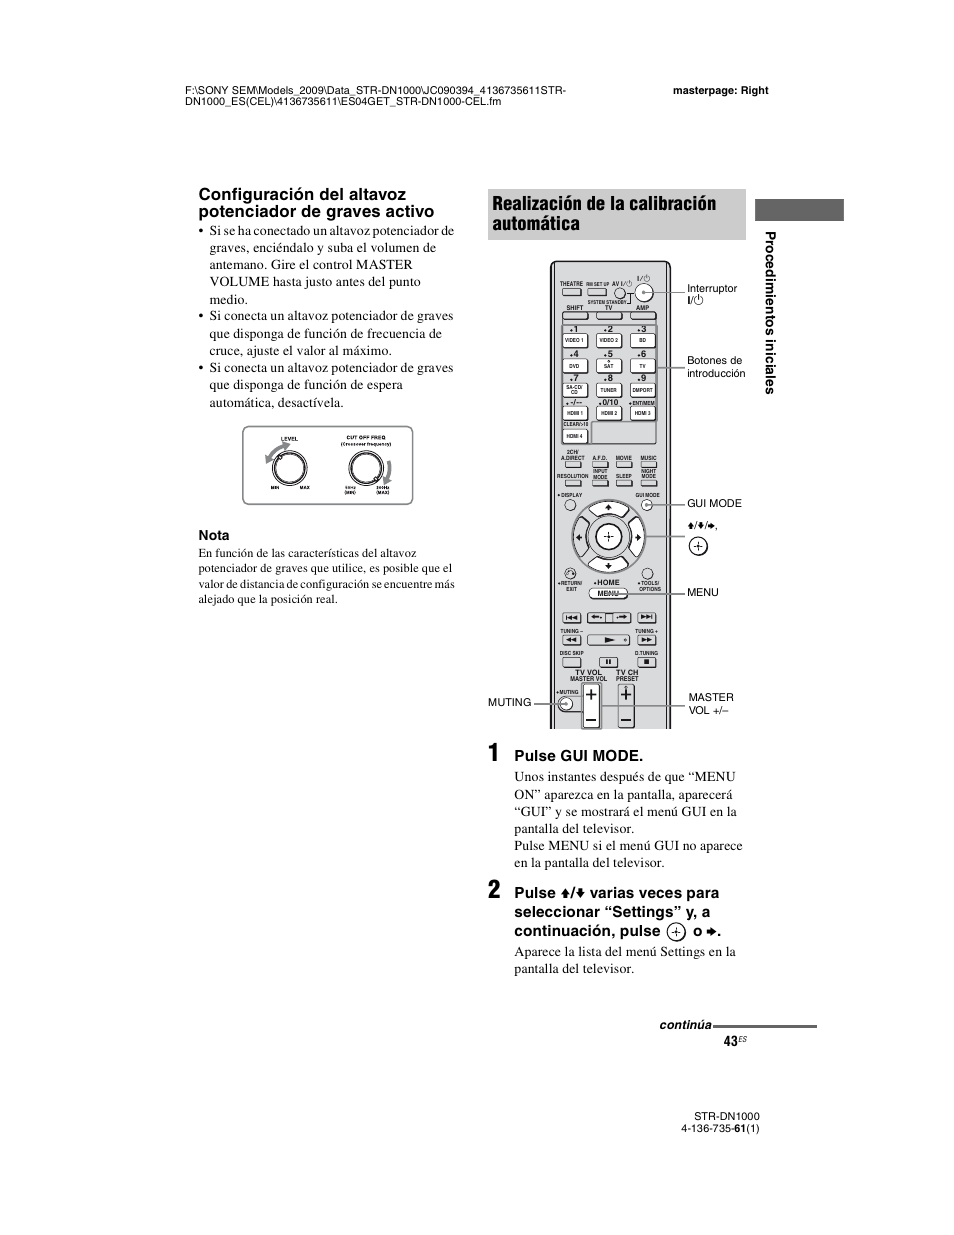 Realización de la calibración automática, Pulse gui mode | Sony STR-DN1000 Manual del usuario | Página 43 / 144